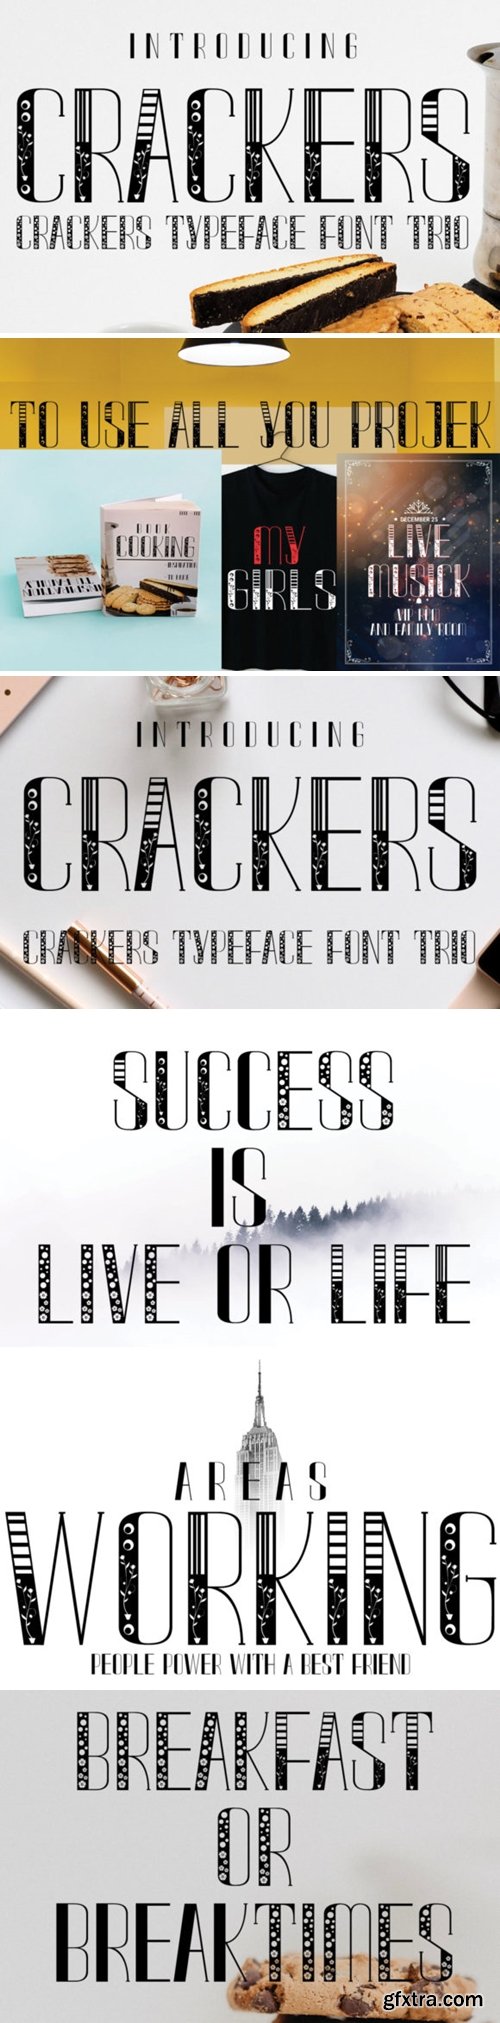 Crackers Font